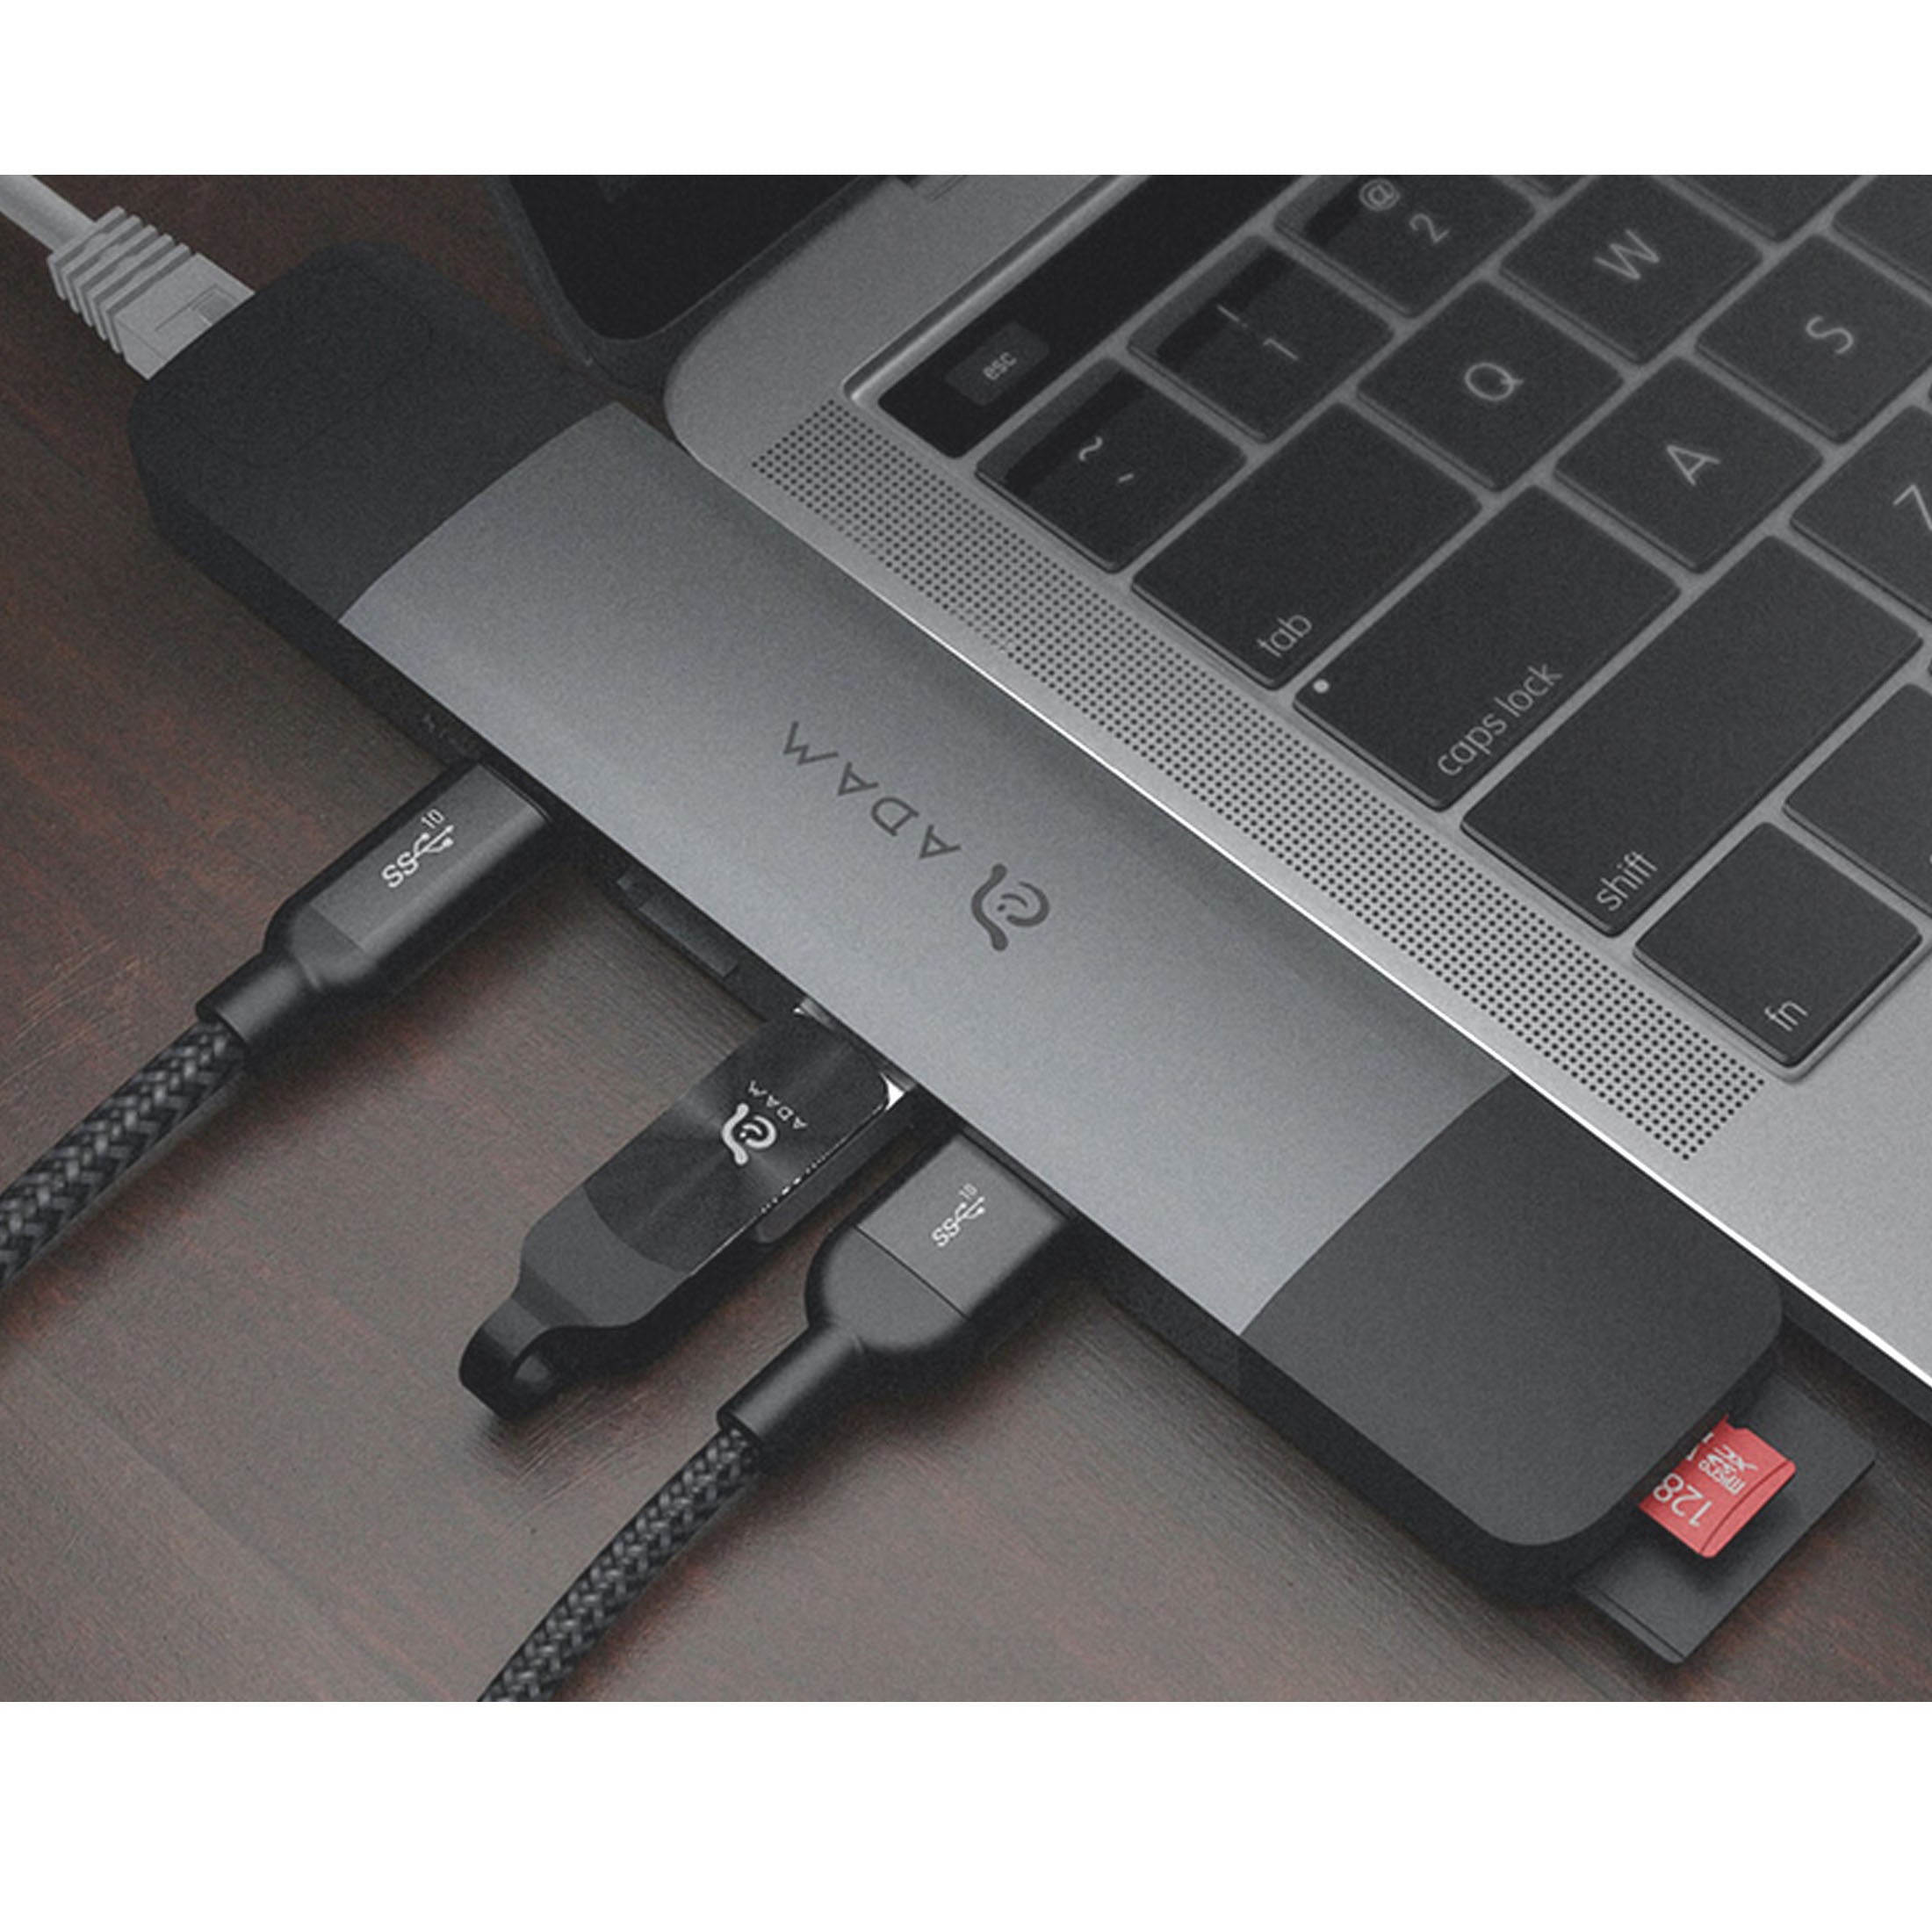 USB & FireWire Hubs